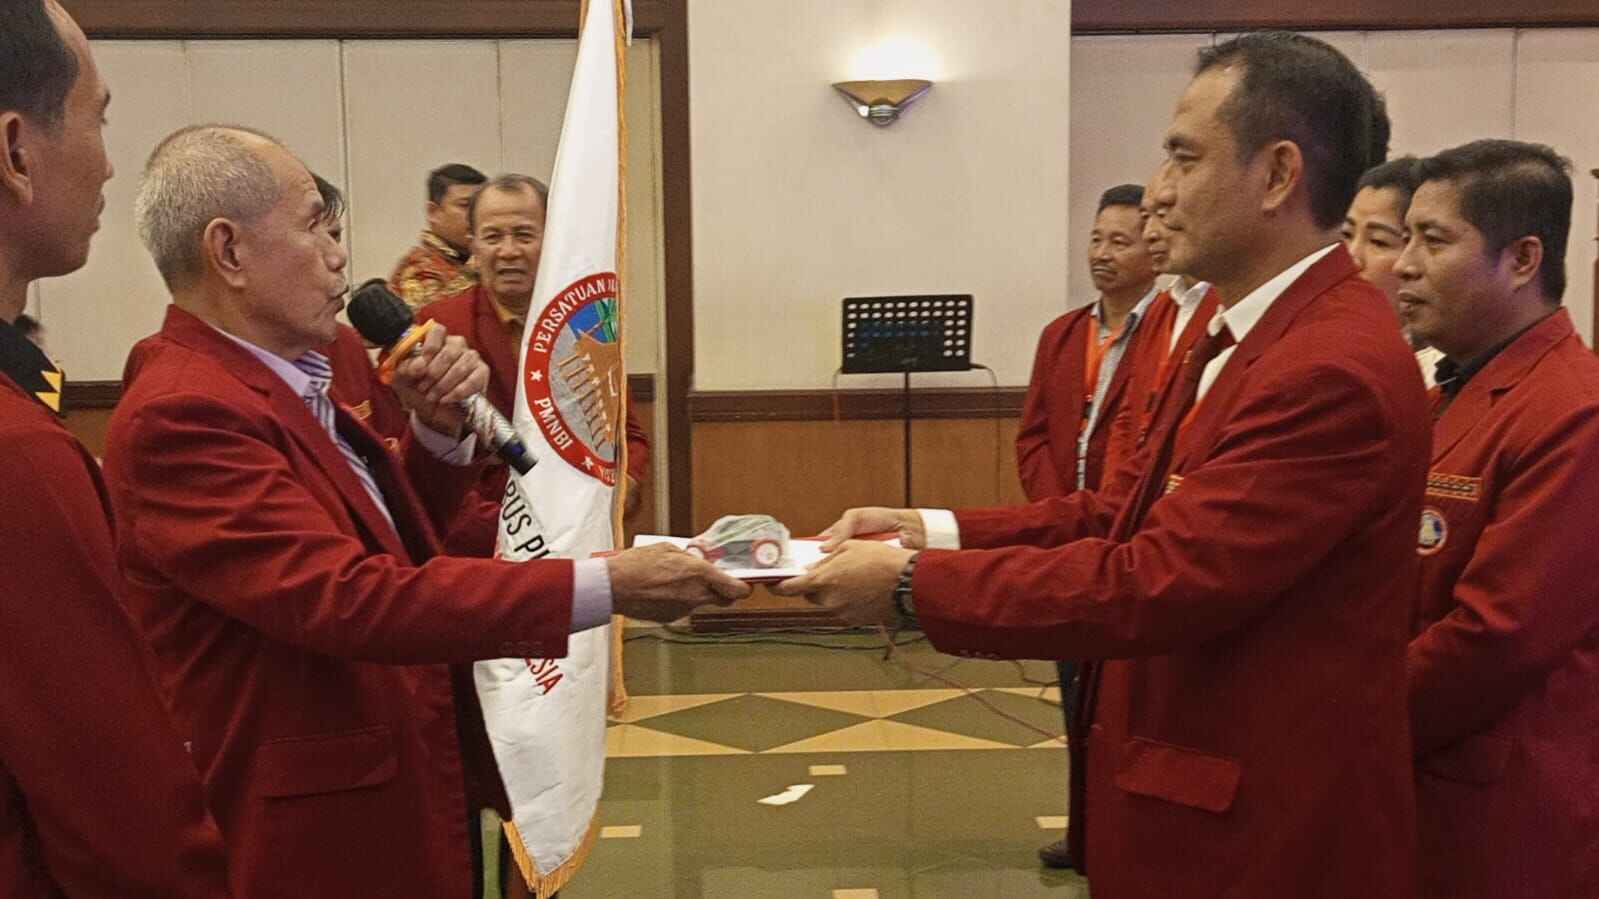 Persatuan Masyarakat Nias Barat Indonesia gelar MUNAS ke II, Leather DS Daeli terpilih Jadi Ketum